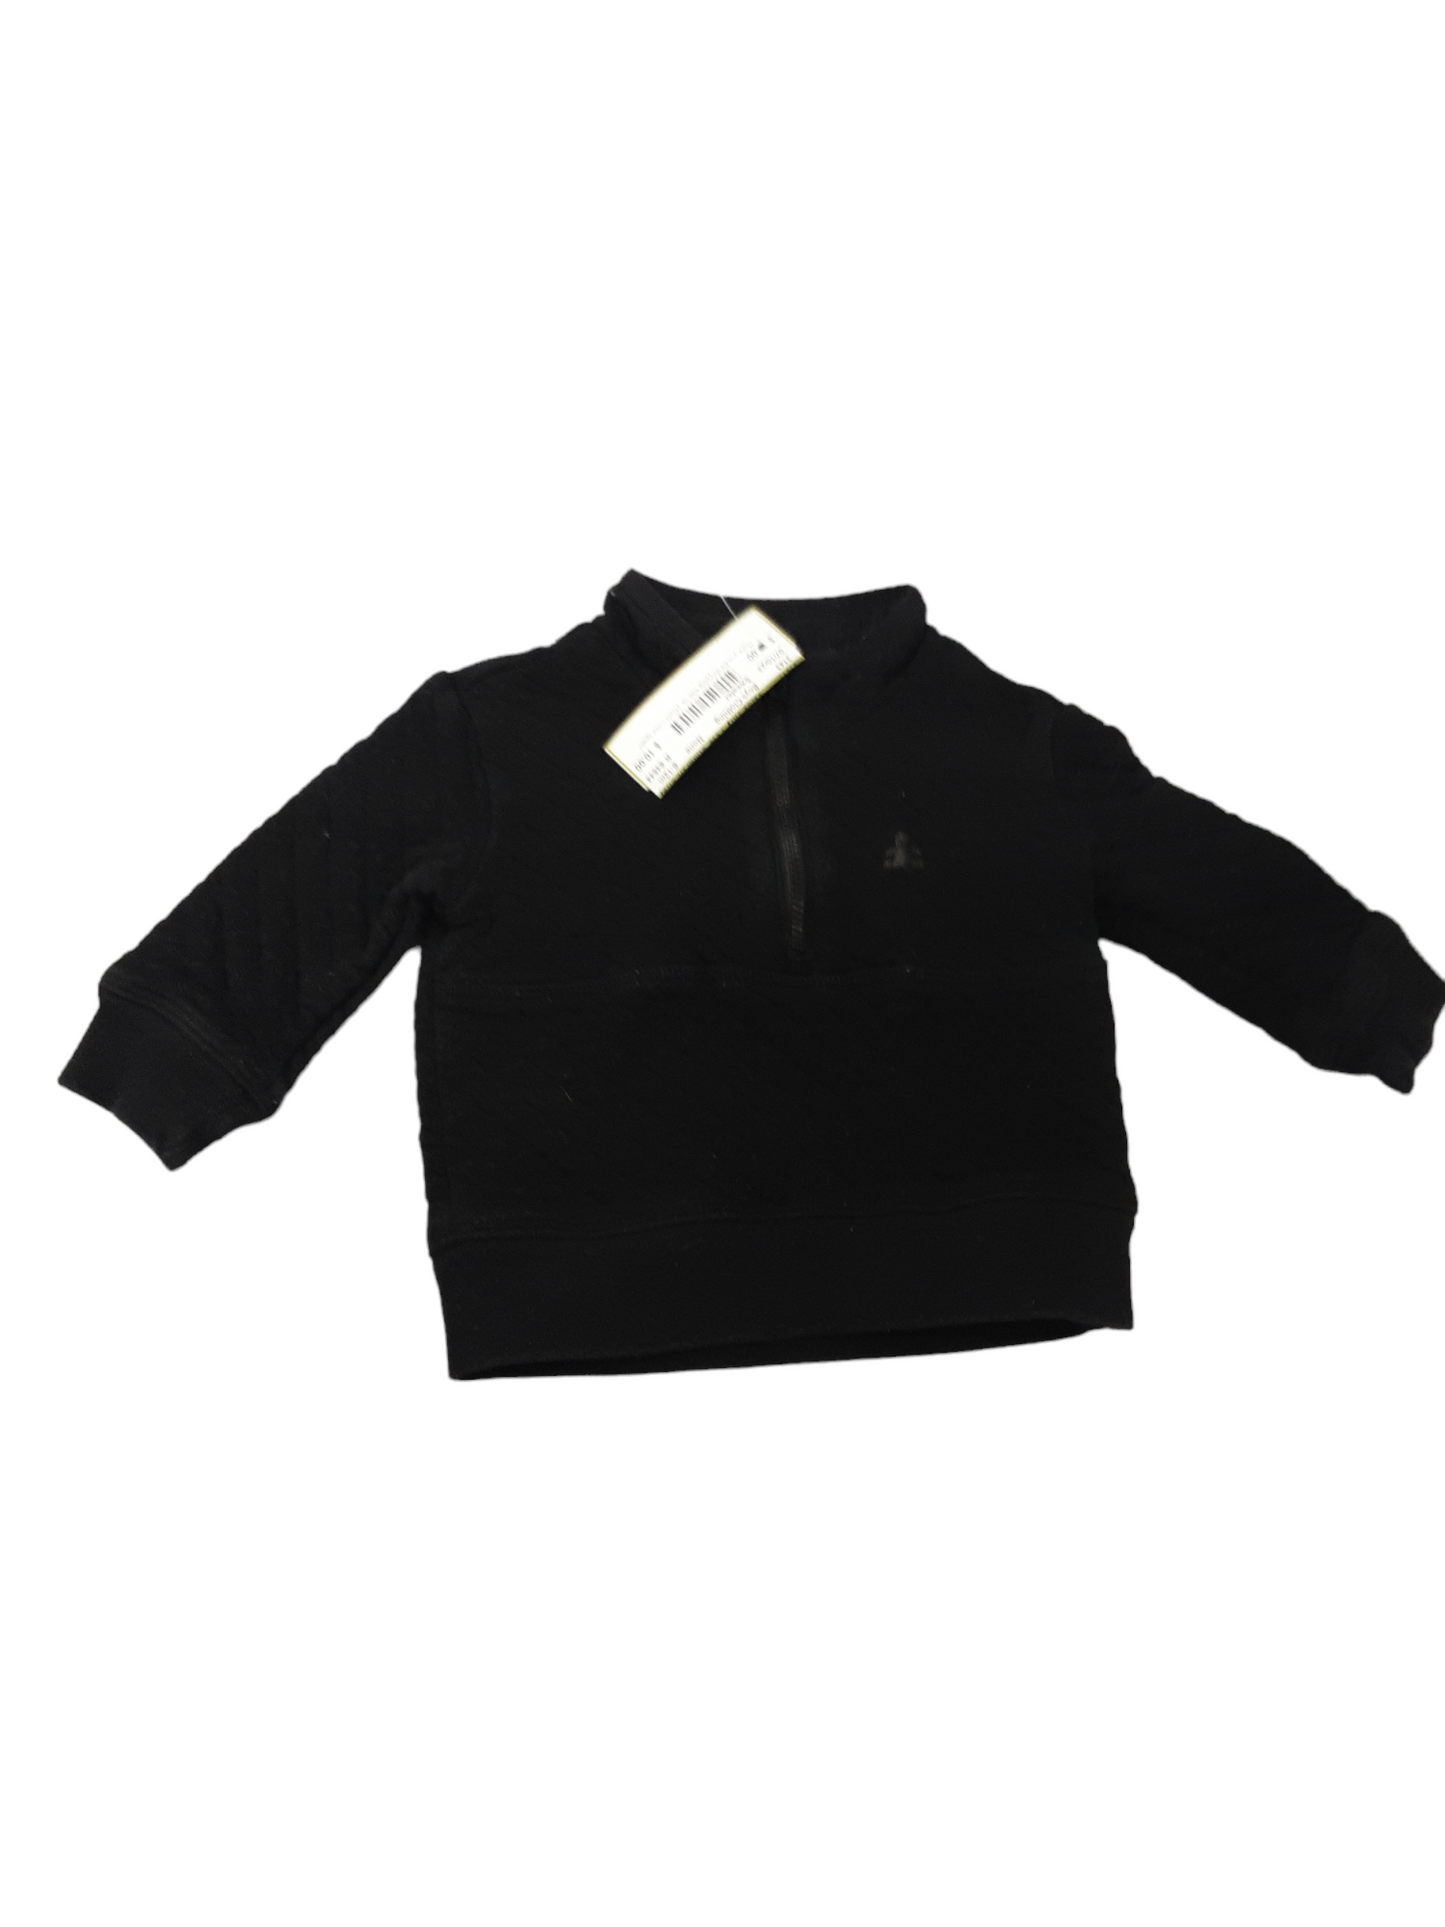 Cute black sweater 6-12m